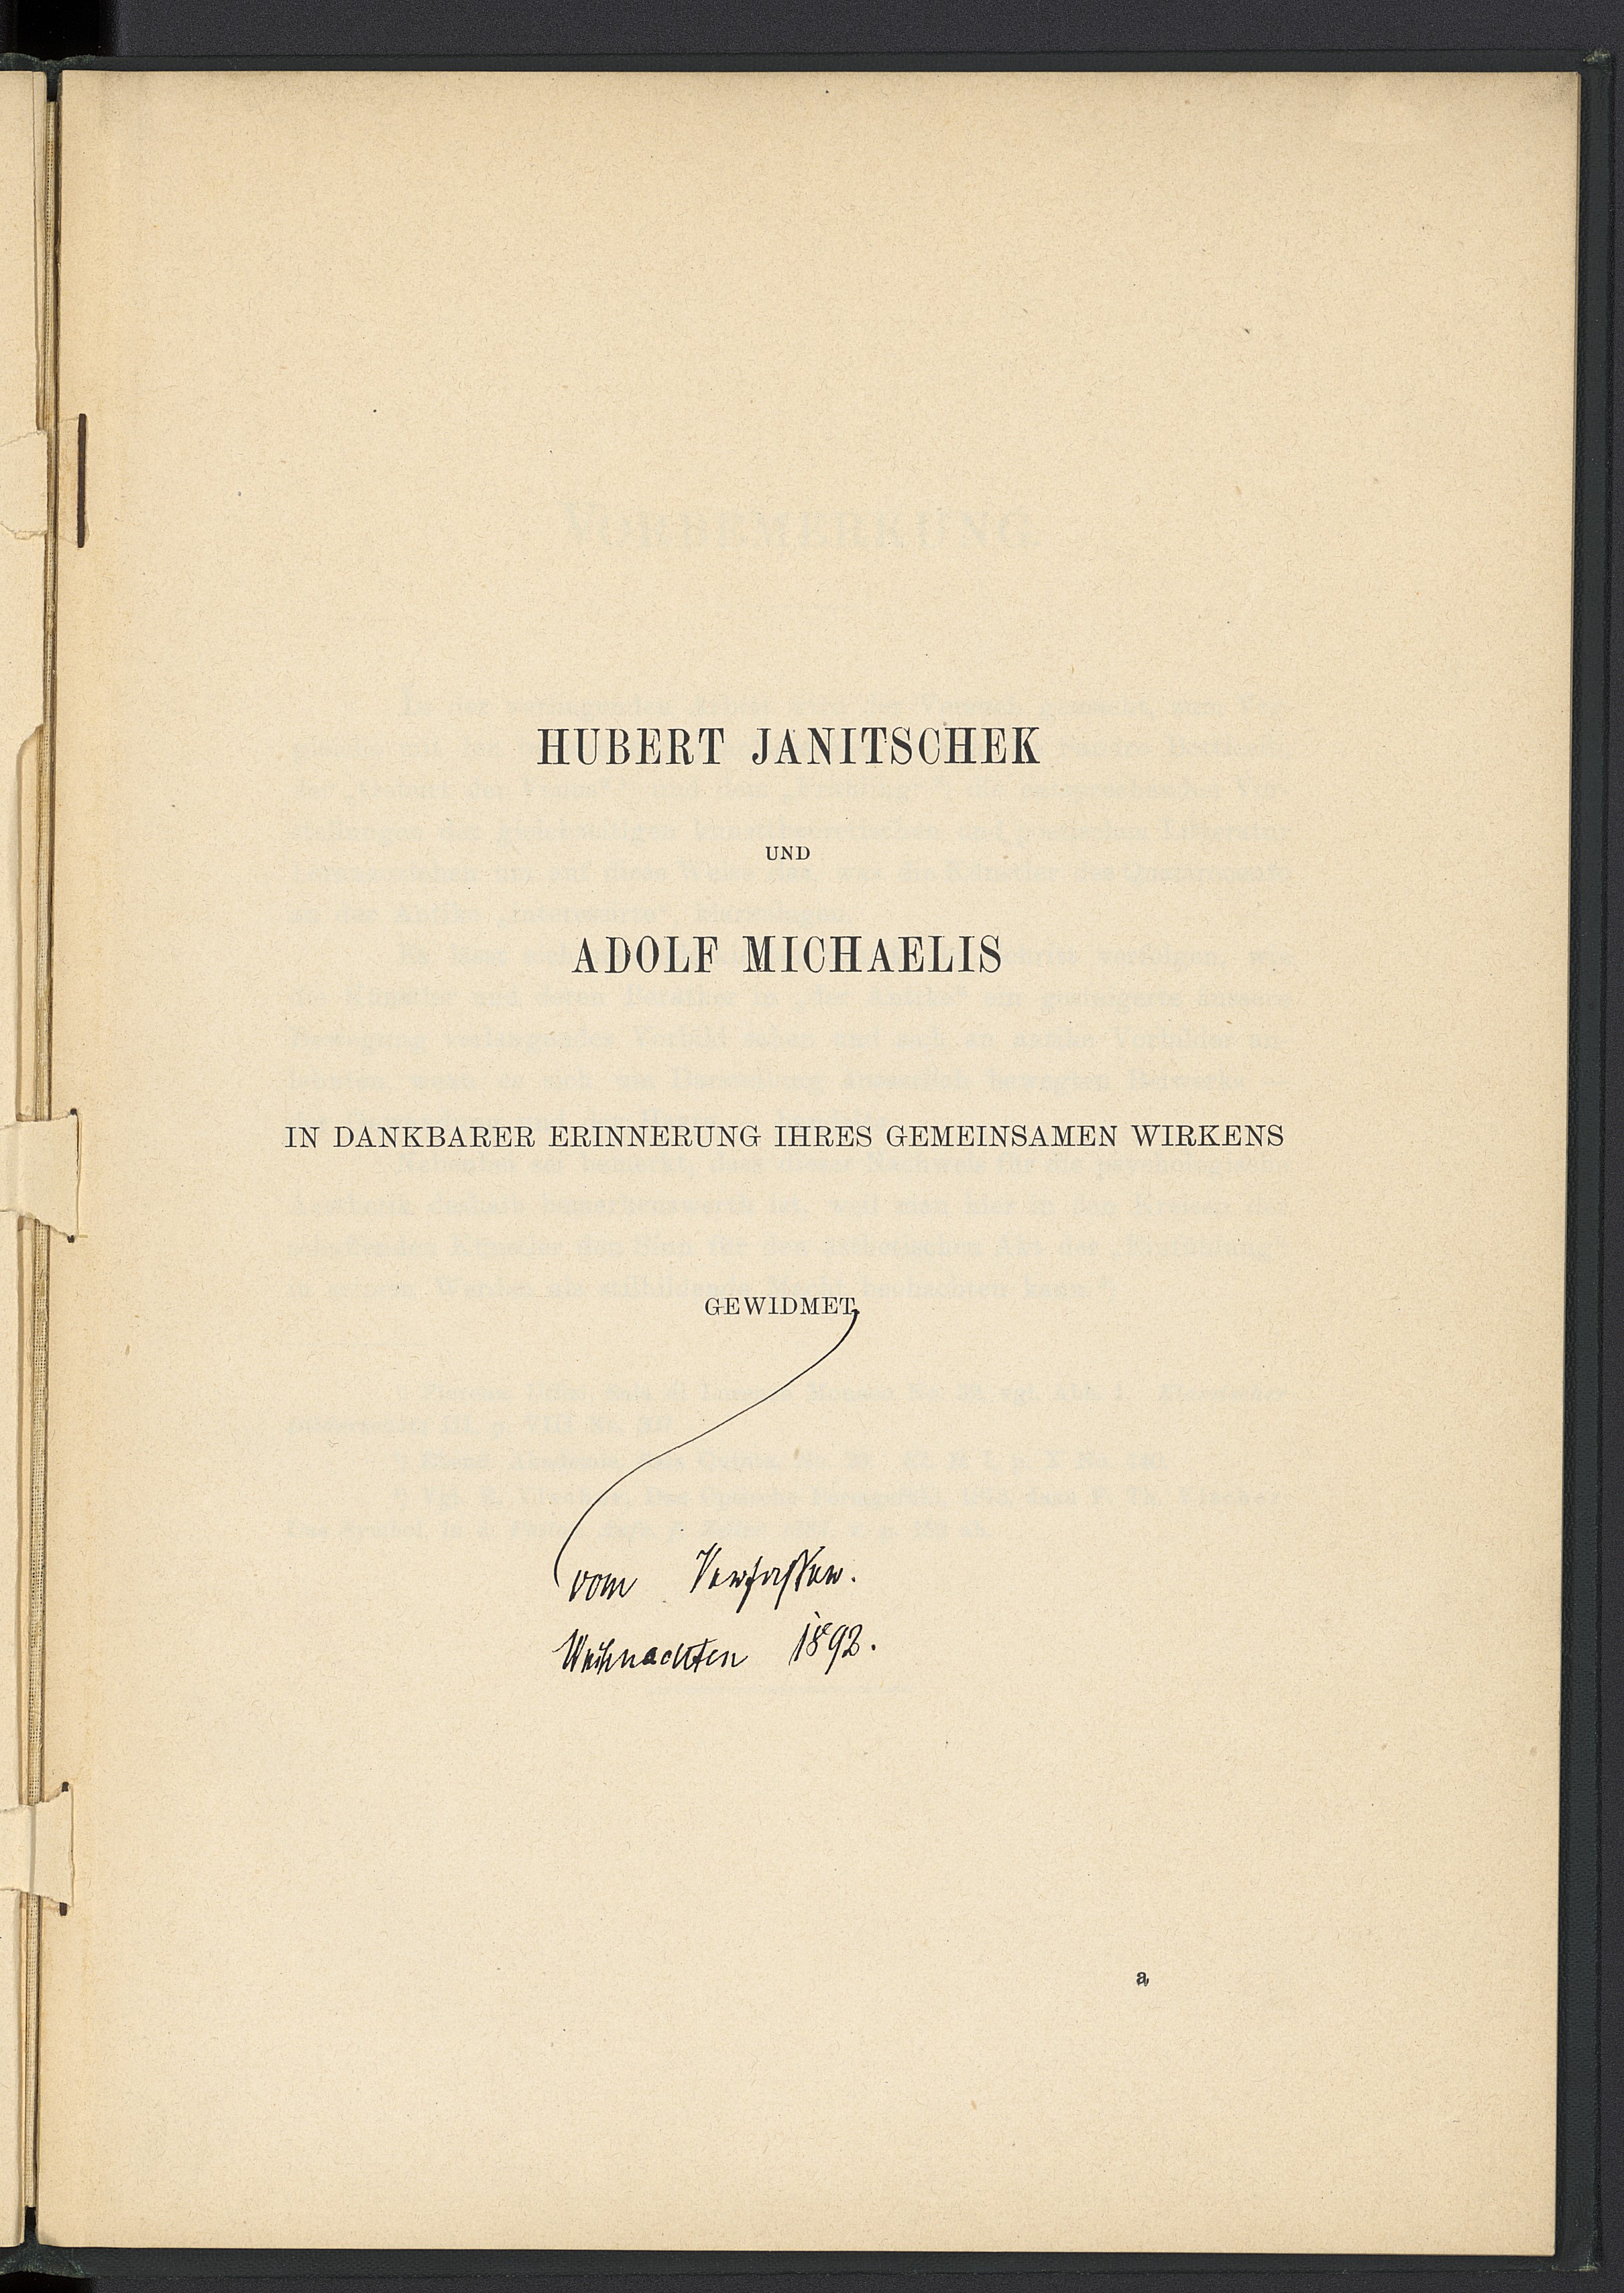 Dédicace originale imprimée et manuscrite de l'auteur ("gewidmet vom Verfasser, Weihnachten 1892") à Adolf Michaelis et à son directeur de thèse, Hubert Janitschek